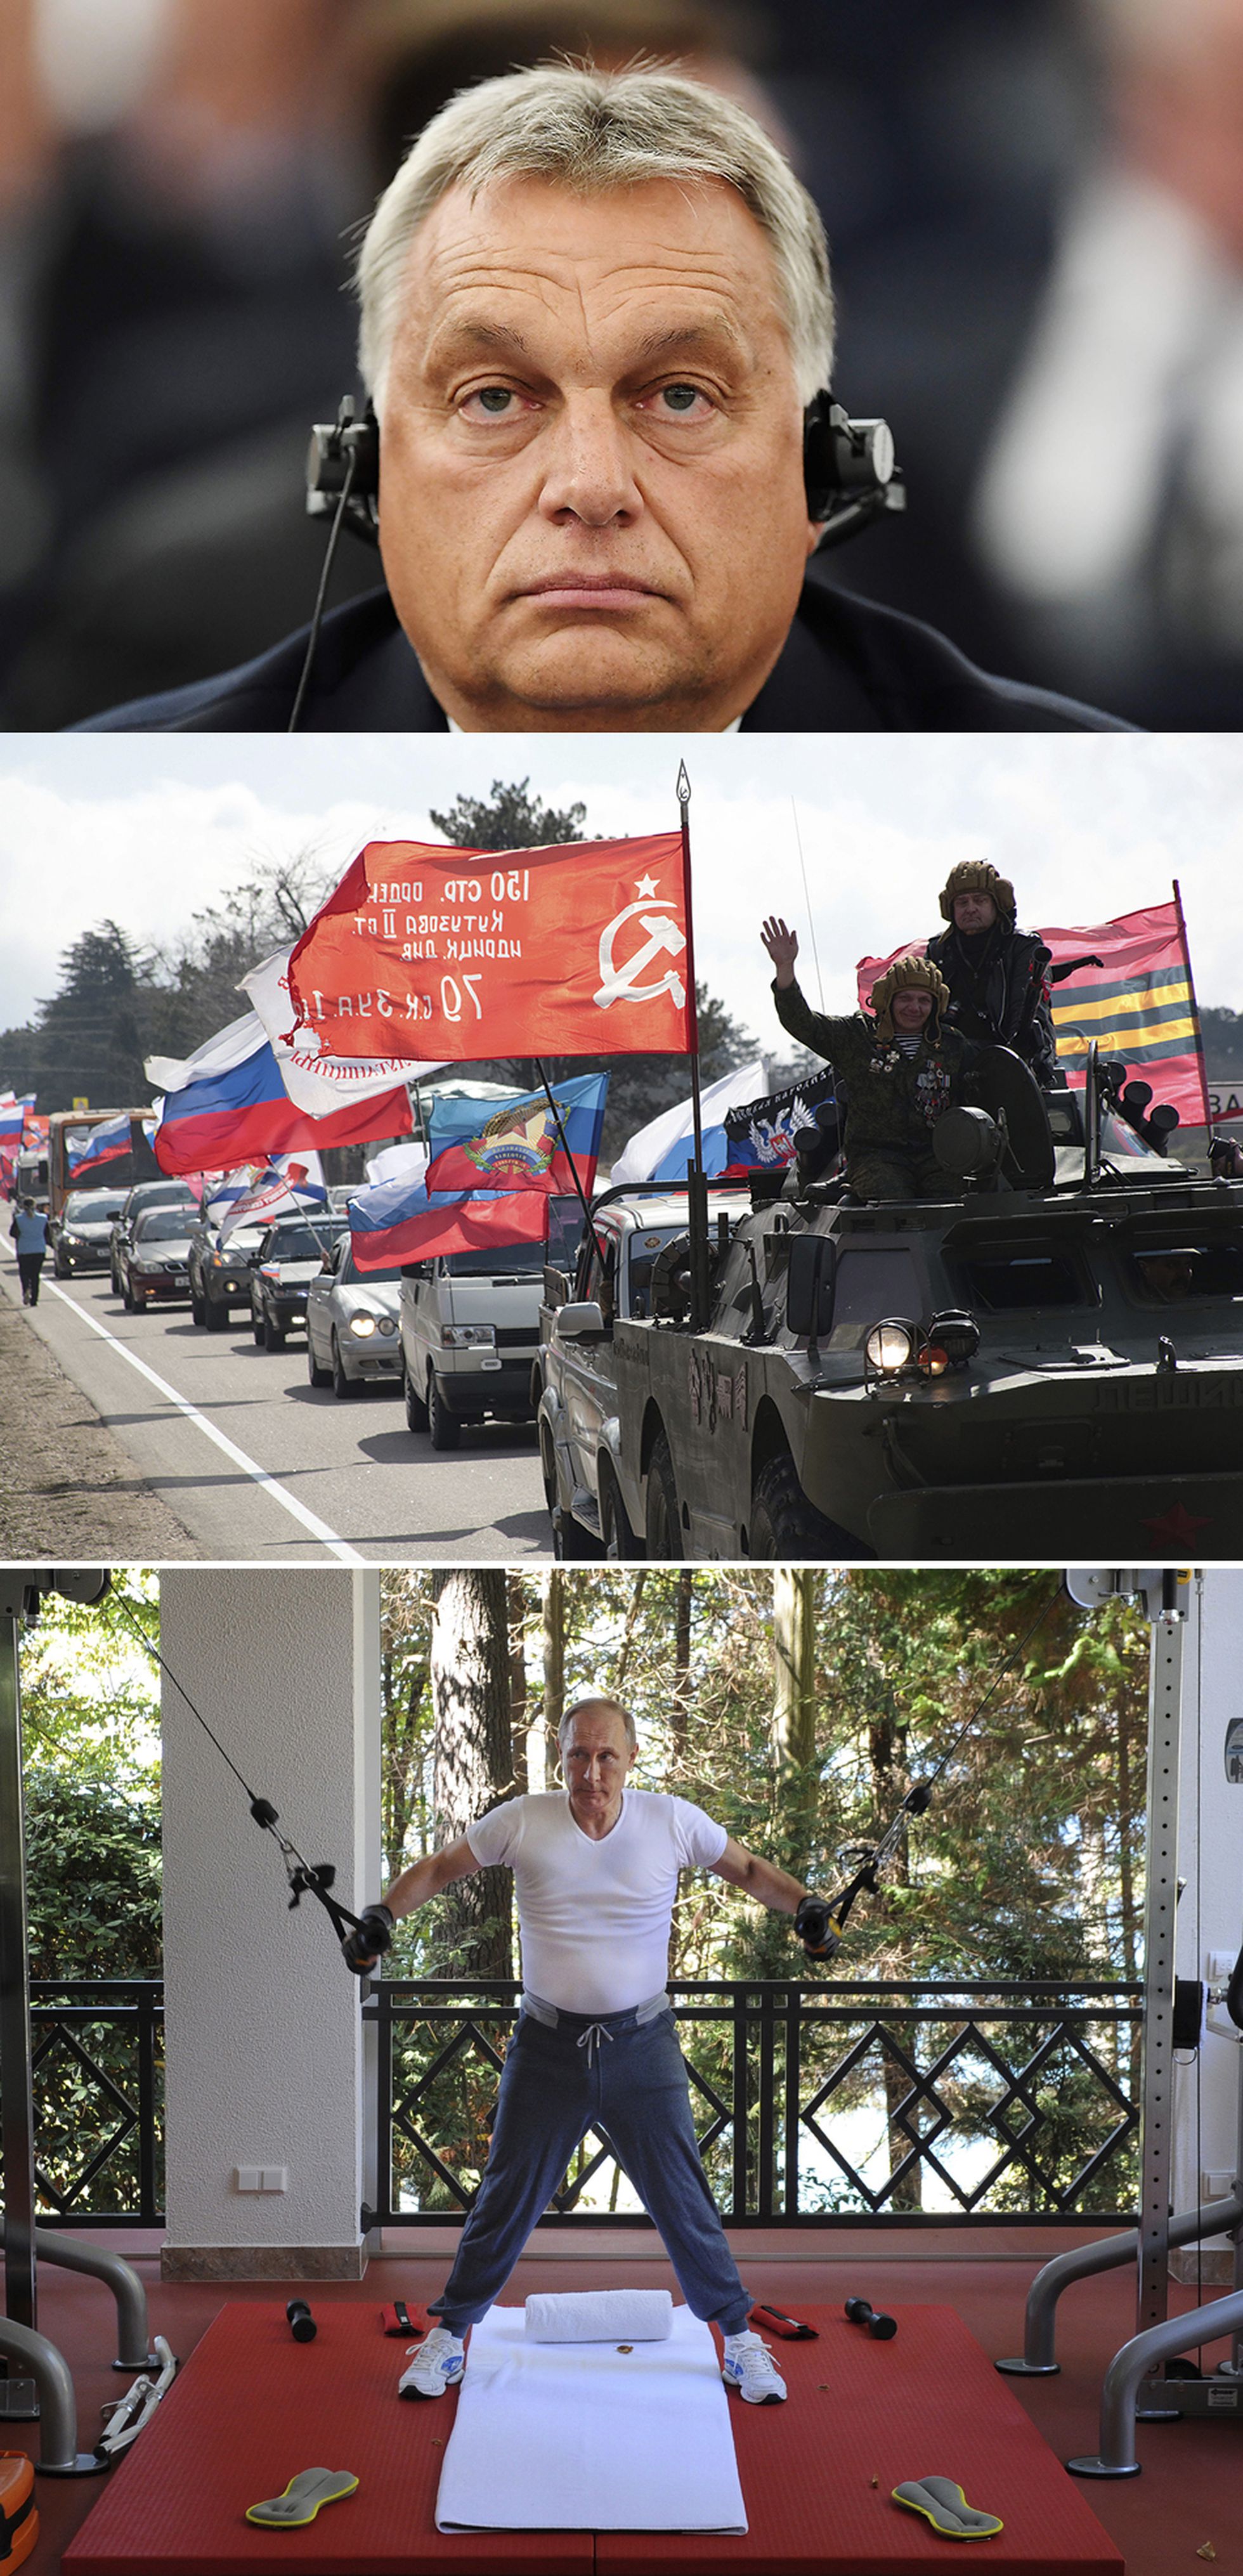 El primer ministro de Hundría, Viktor Orbán, en un encuentro internacional en 2018 (arriba). Marcha de celebración por la anexión de la península de Crimea por parte de Rusia, en Sebastopol en 2019. Y el presidente de Rusia, Vladímir Putin, entrenando en su casa en 2015. <b>Pulse en la imagen para visitar la fotogalería sobre el legado de Merkel</b>.